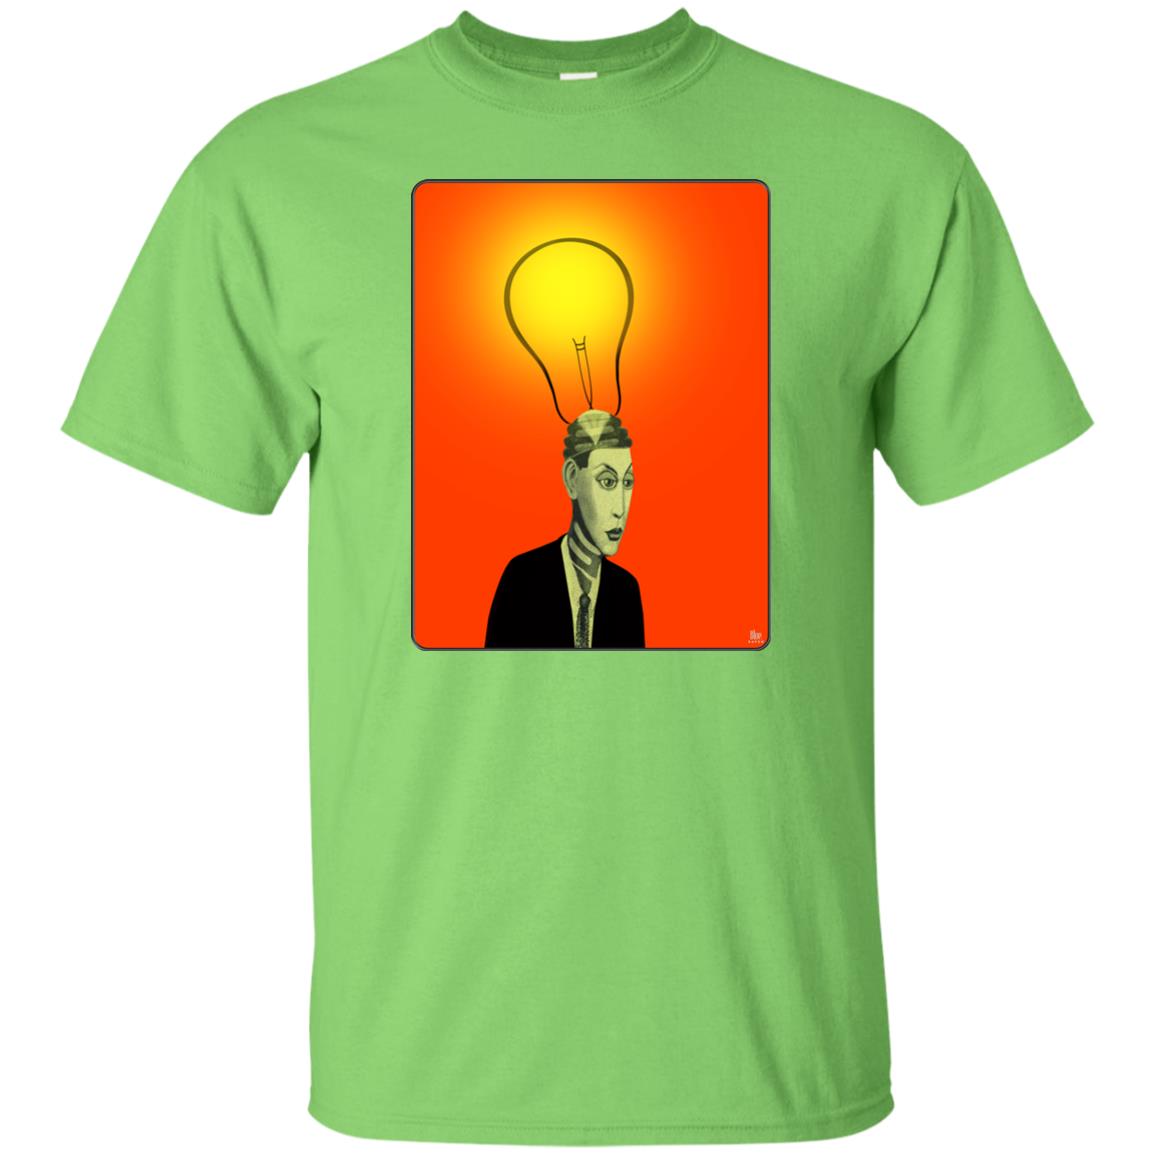 BRIGHT IDEA - Men's Classic Fit T-Shirt